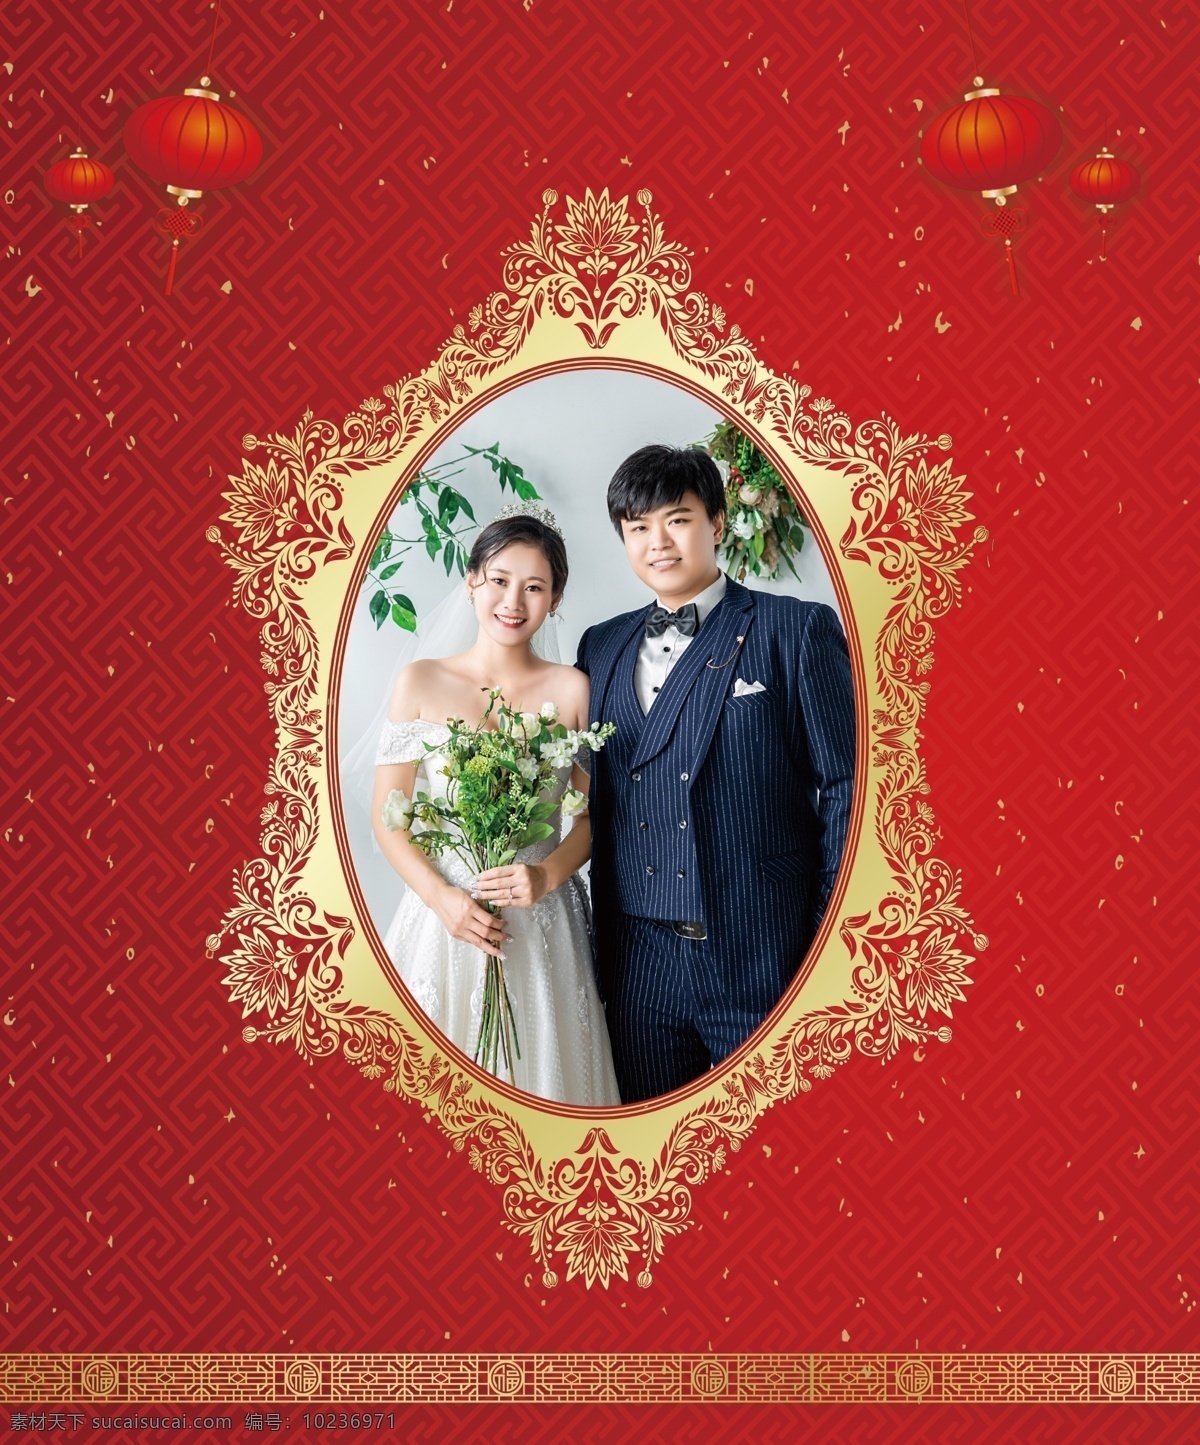 婚庆背景图片 婚庆 海报 红色背景 结婚喷绘 婚庆背景